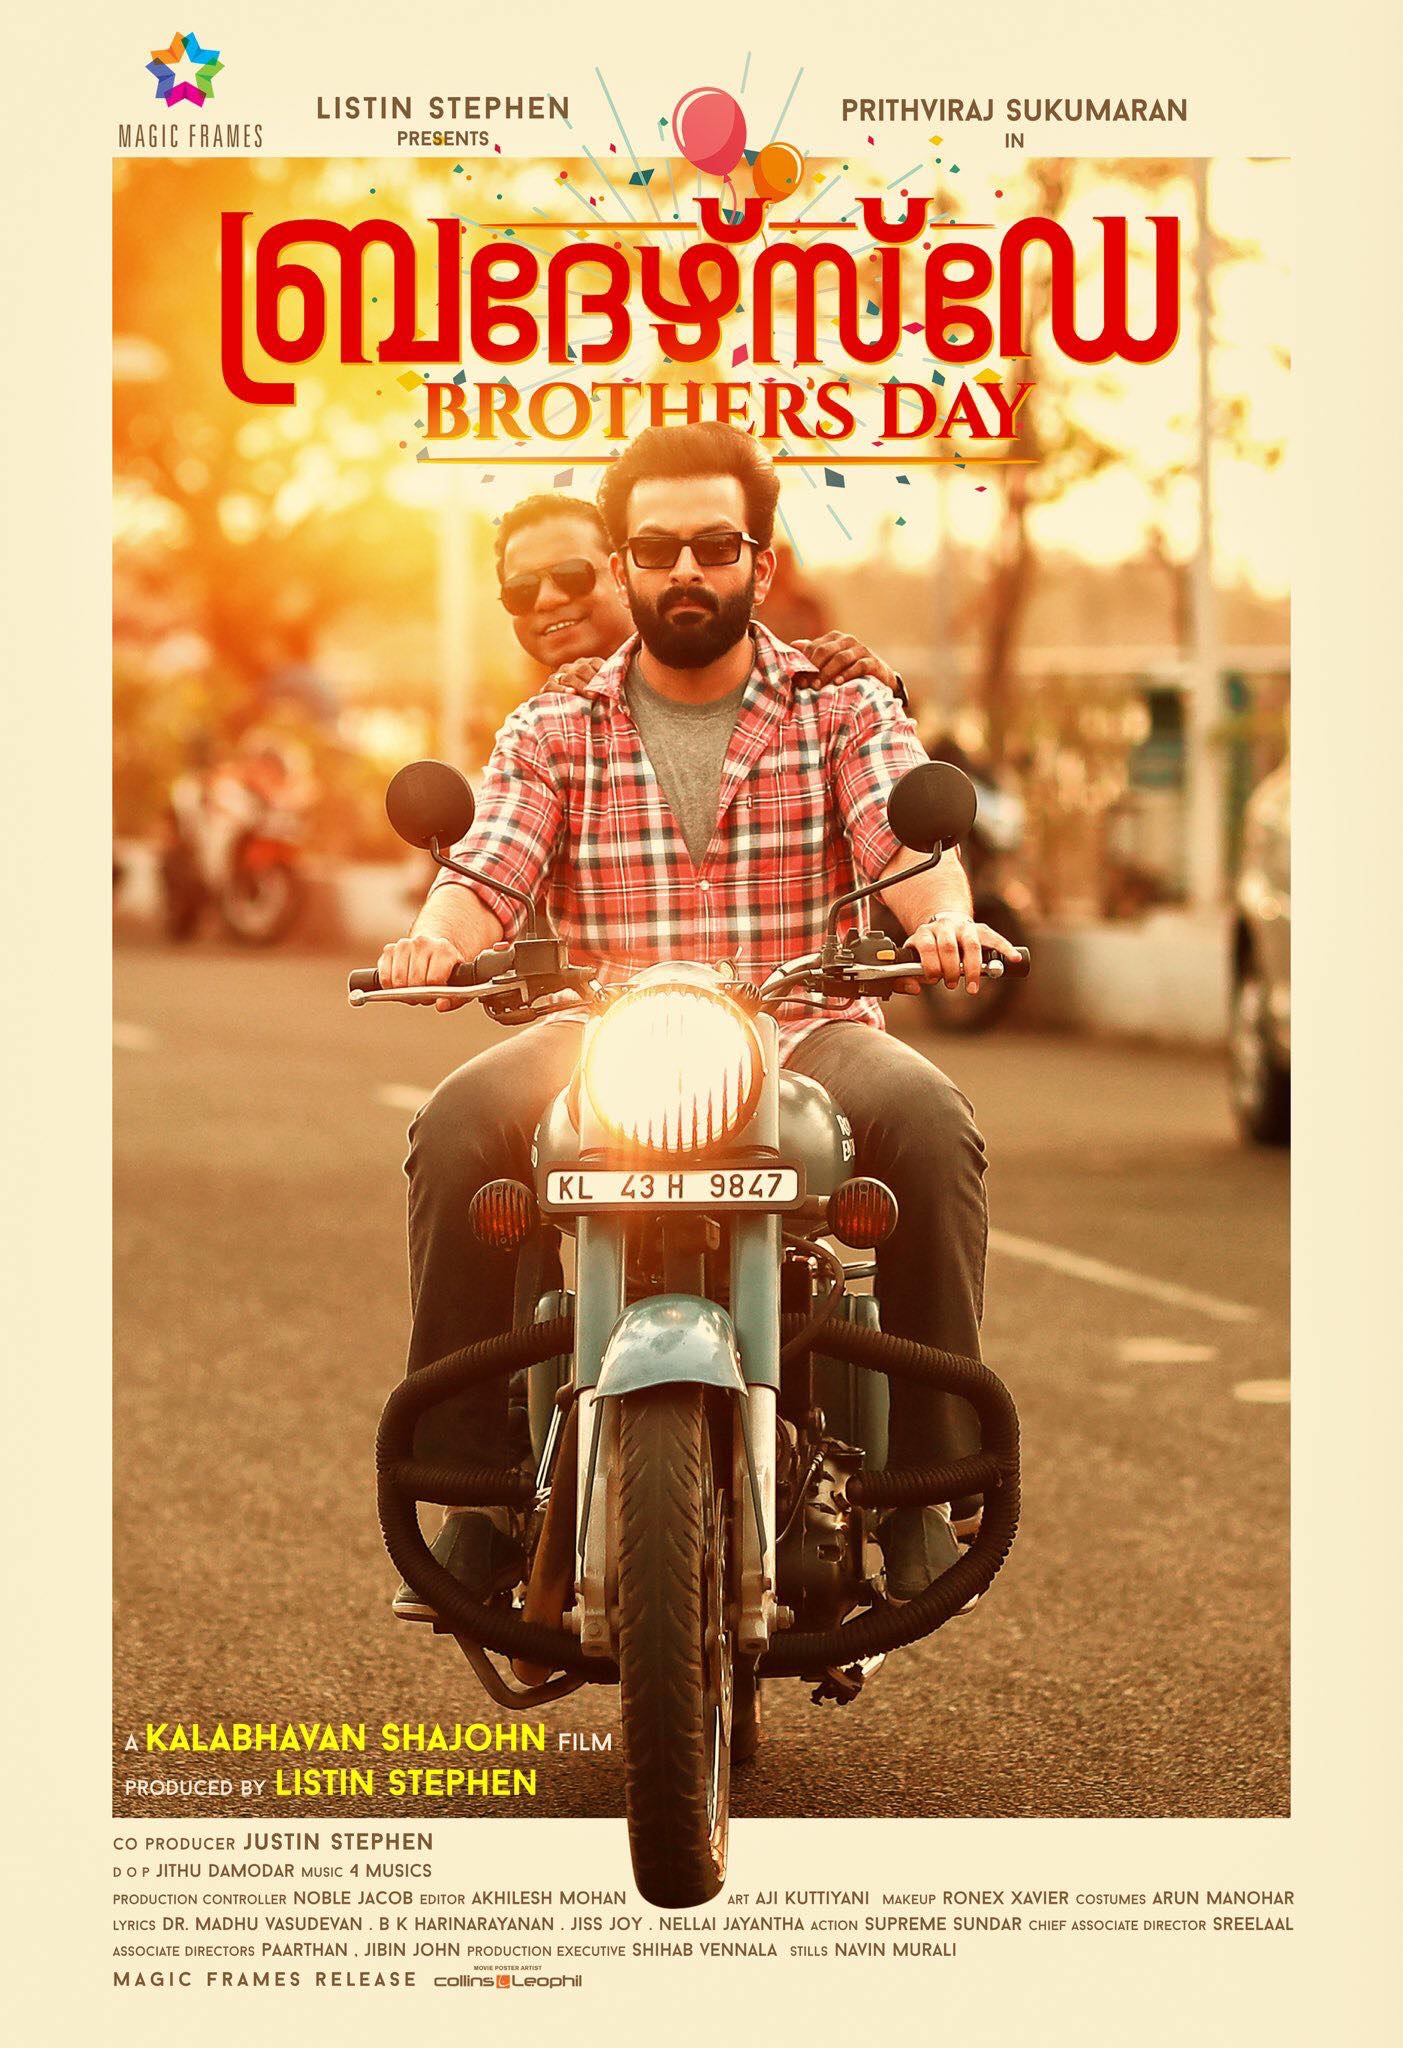 ดูหนังออนไลน์ฟรี Brother s Day (2019) วันพี่น้อง หนังเต็มเรื่อง หนังมาสเตอร์ ดูหนังHD ดูหนังออนไลน์ ดูหนังใหม่